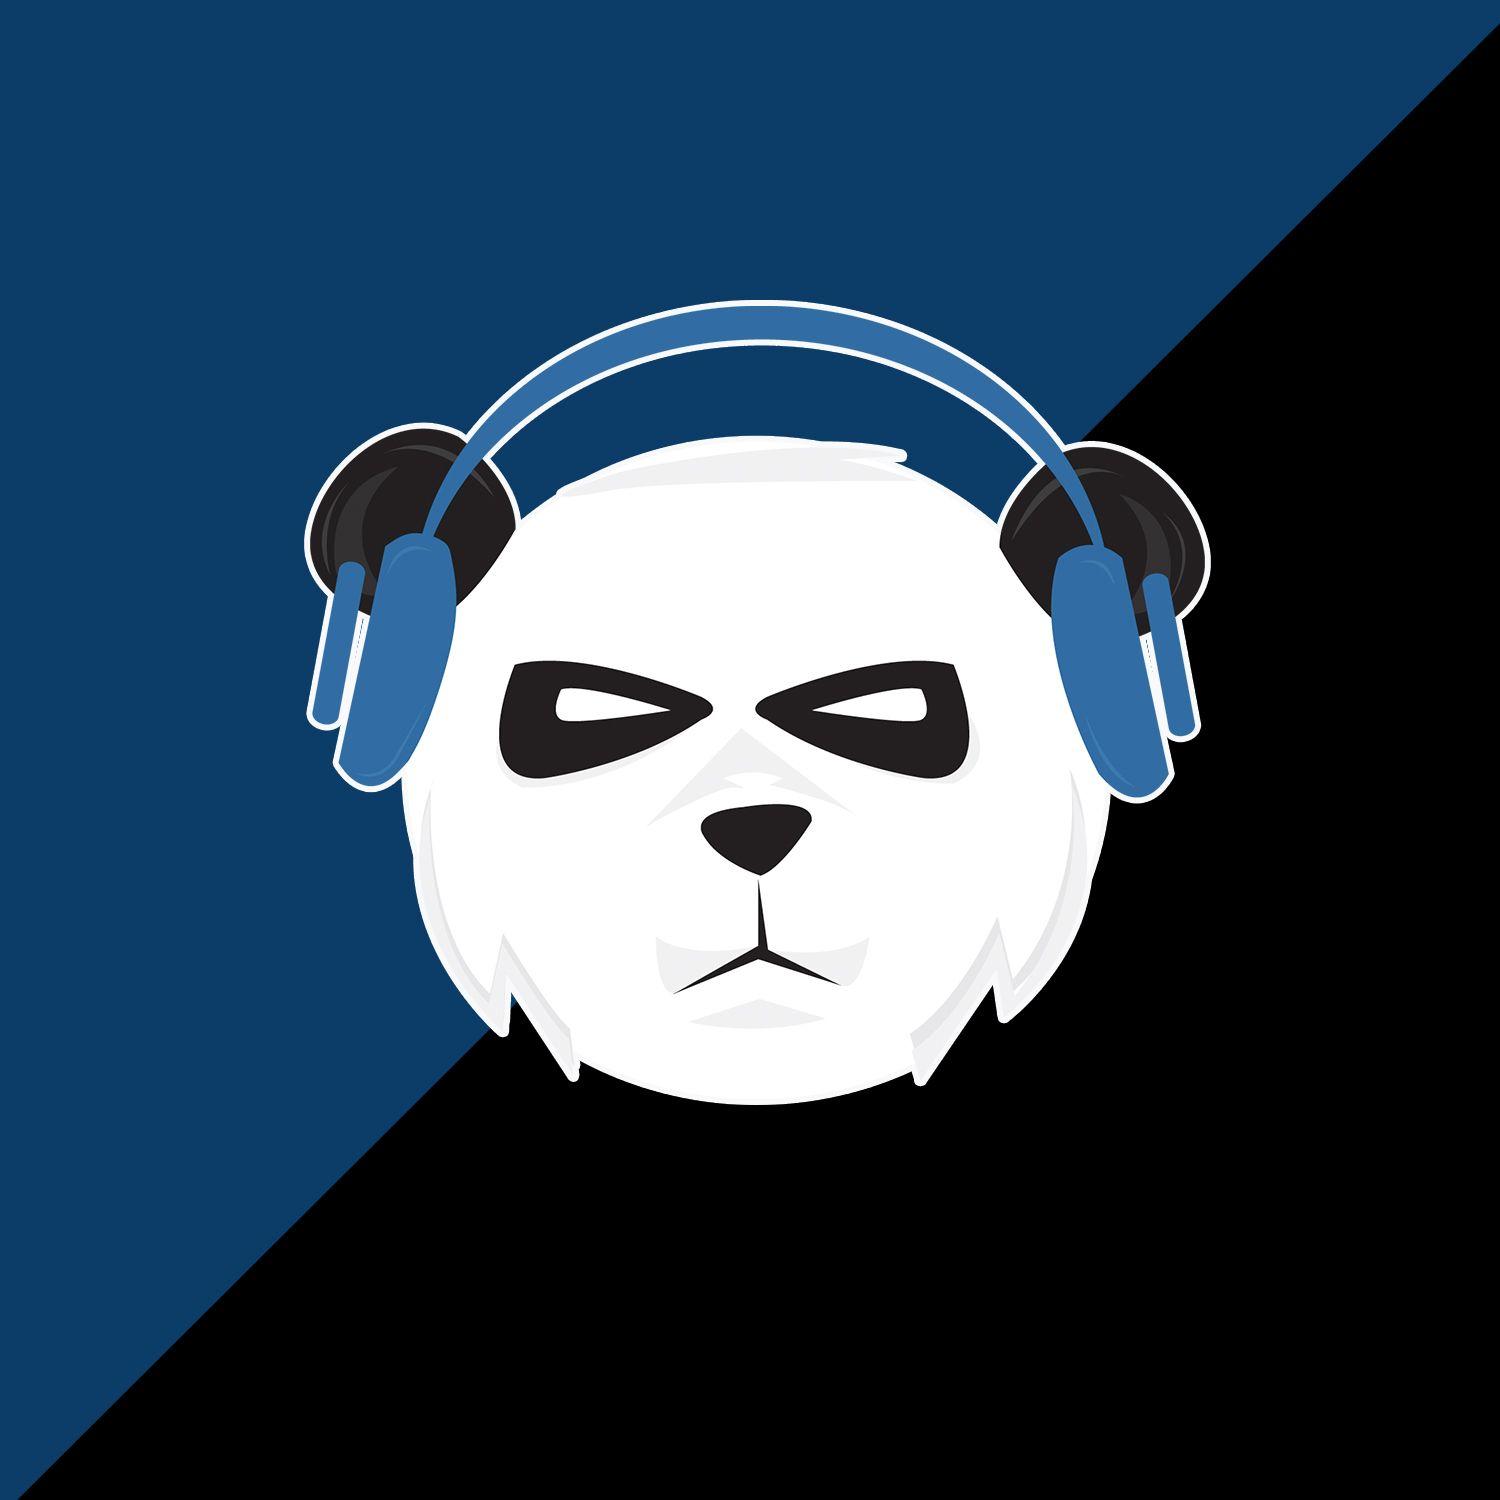 Panda Cool Logo - Panda eSports Gaming logo Design Gamer - vfx_tv logo design ...